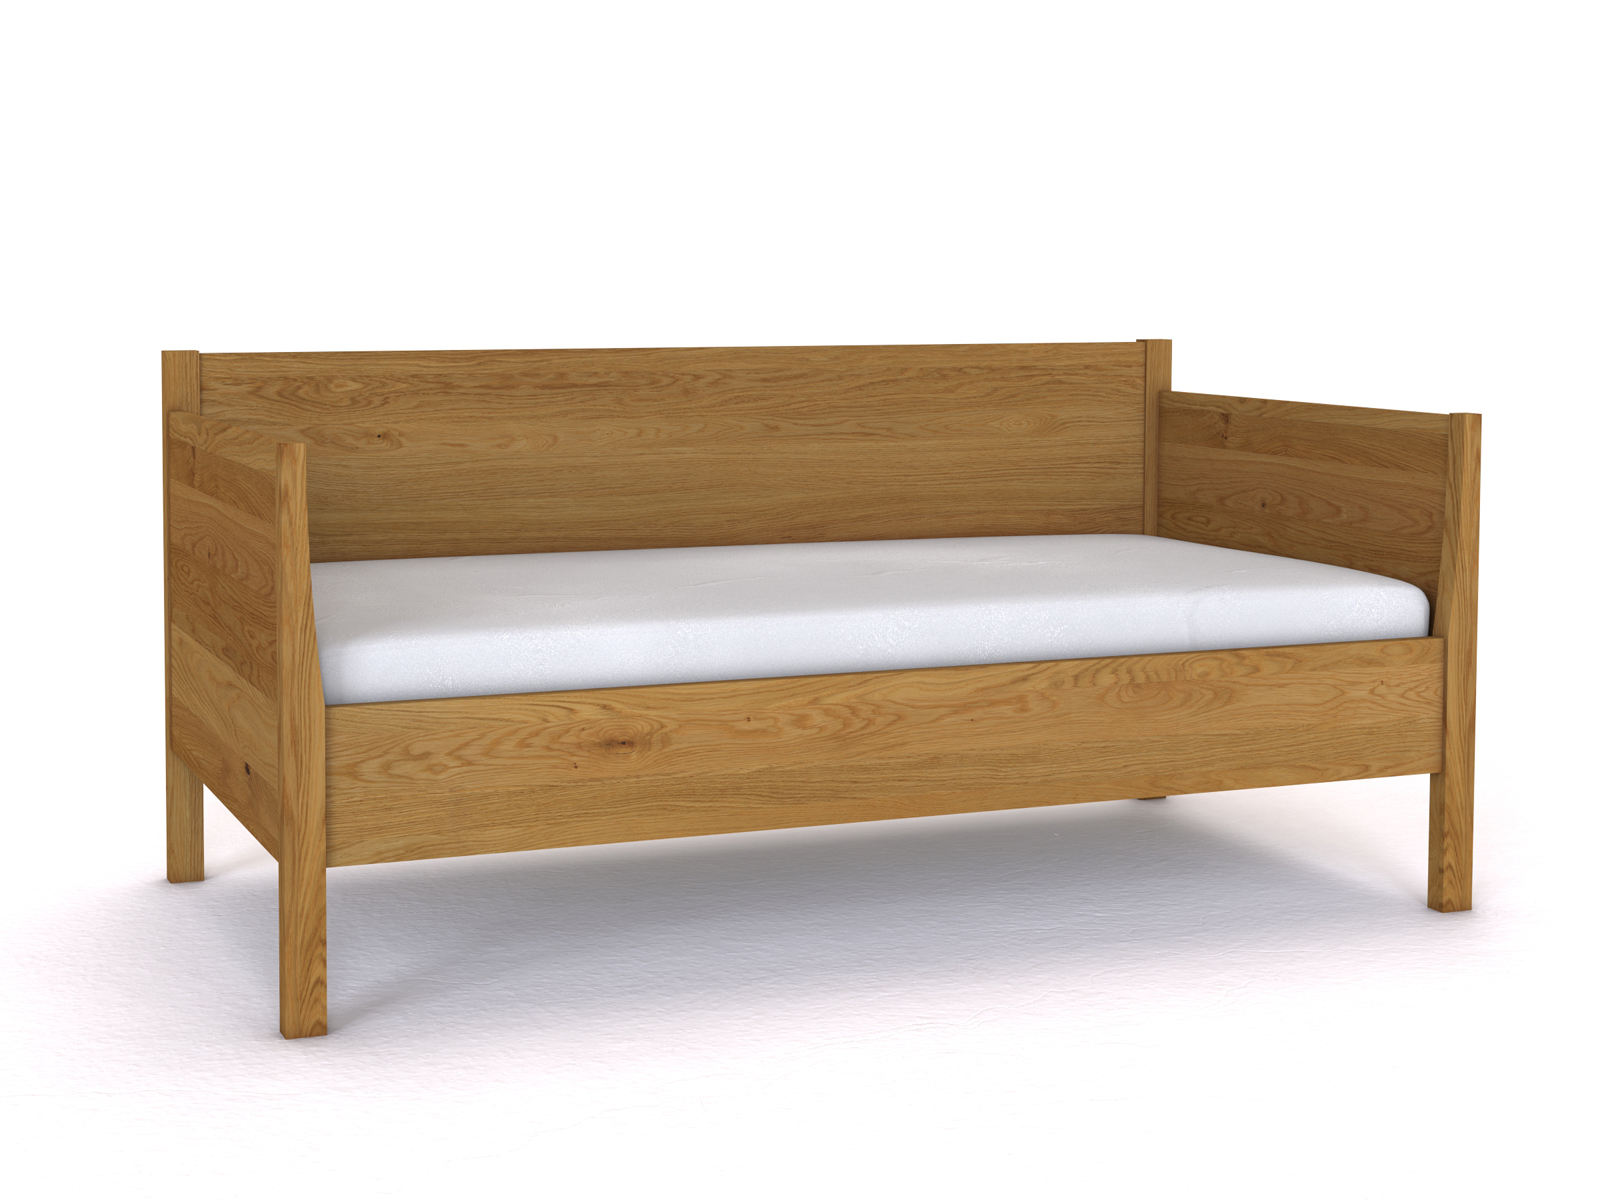 Sofabett „Melanie“ aus Eiche in den Maßen 90 x 200 cm - mit zwei Armlehnen